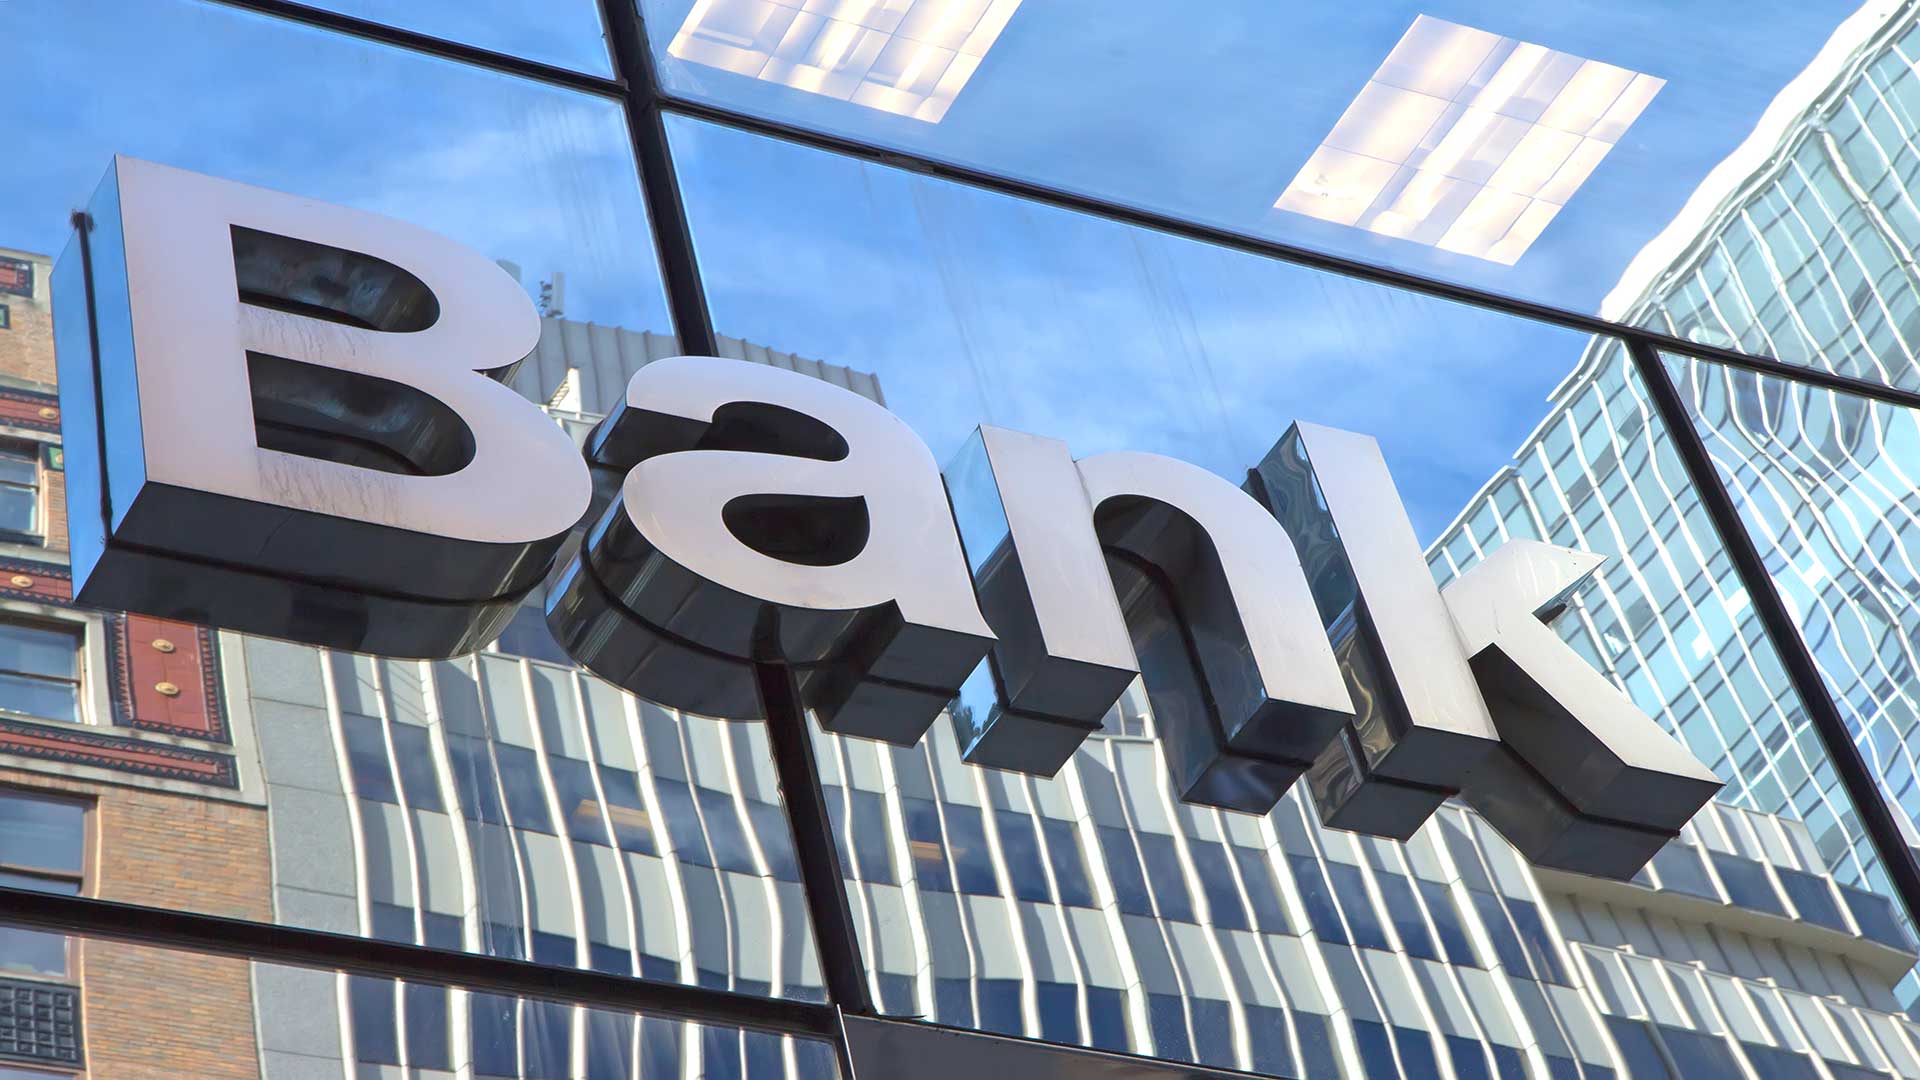 پیش بینی فروش 40 هزار میلیارد تومان از اموال مازاد بانک ها در سال جاری